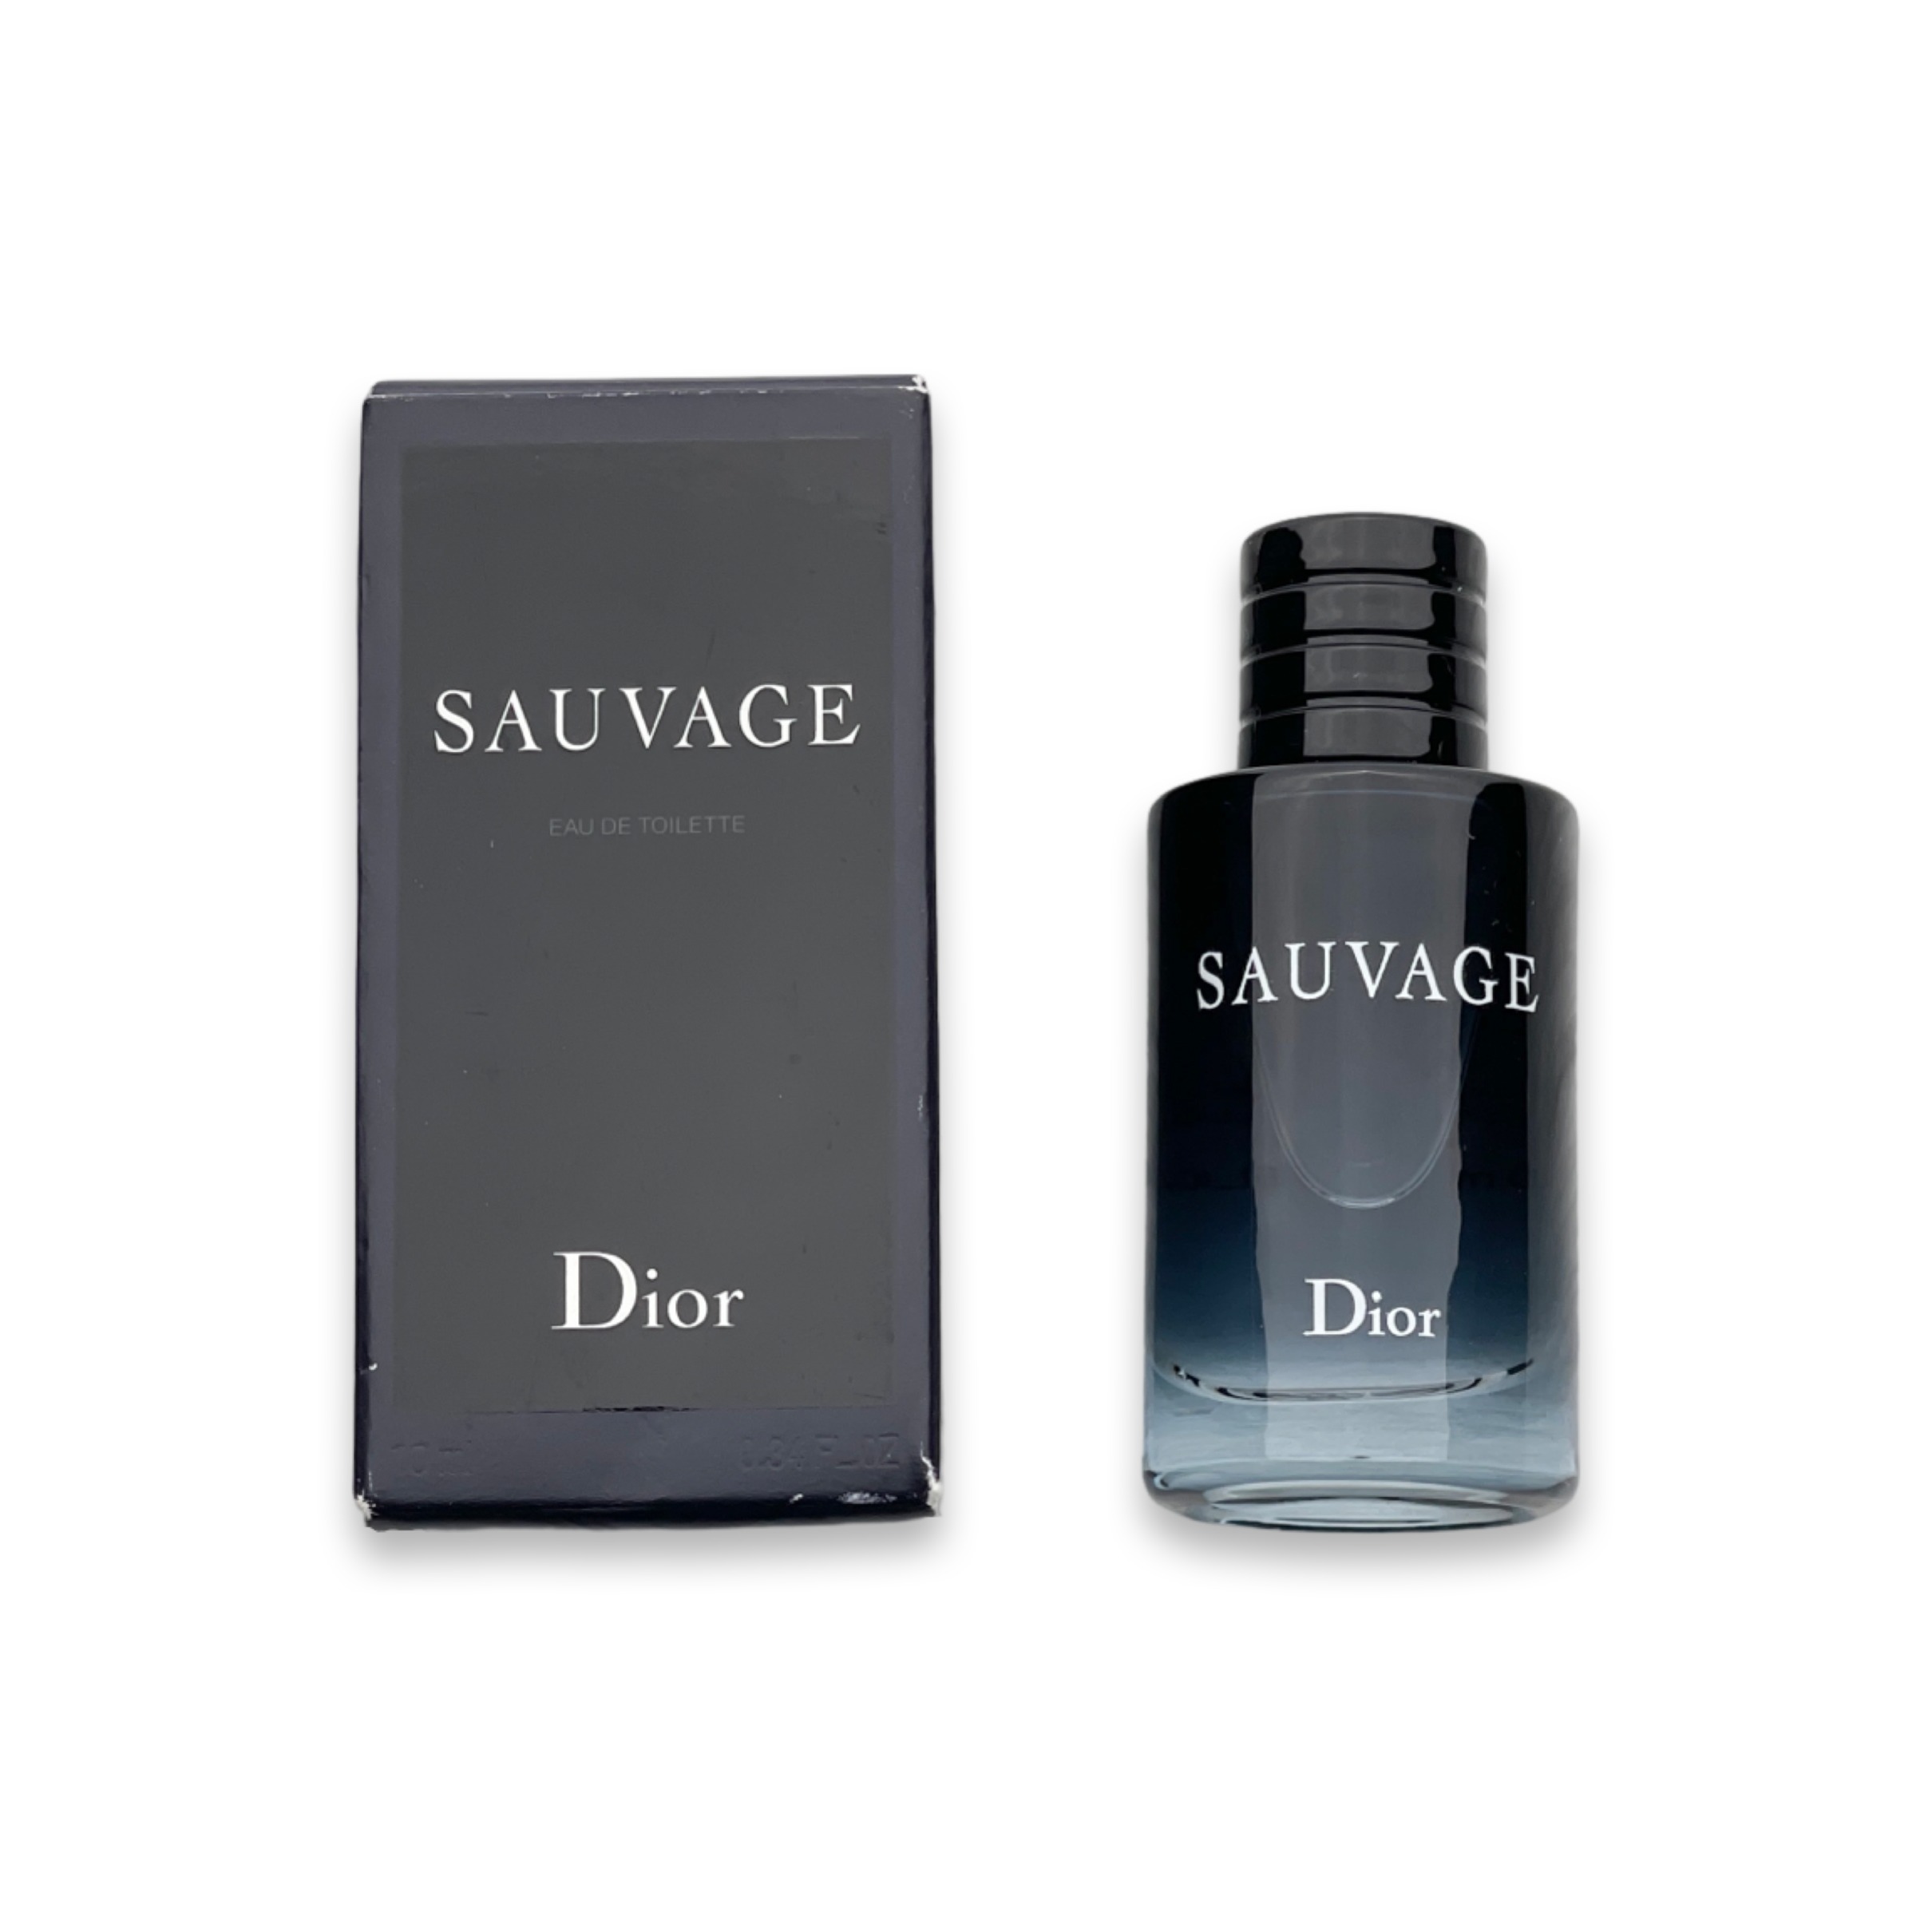 Dior Sauvage EDT / Travel Size (10ml)